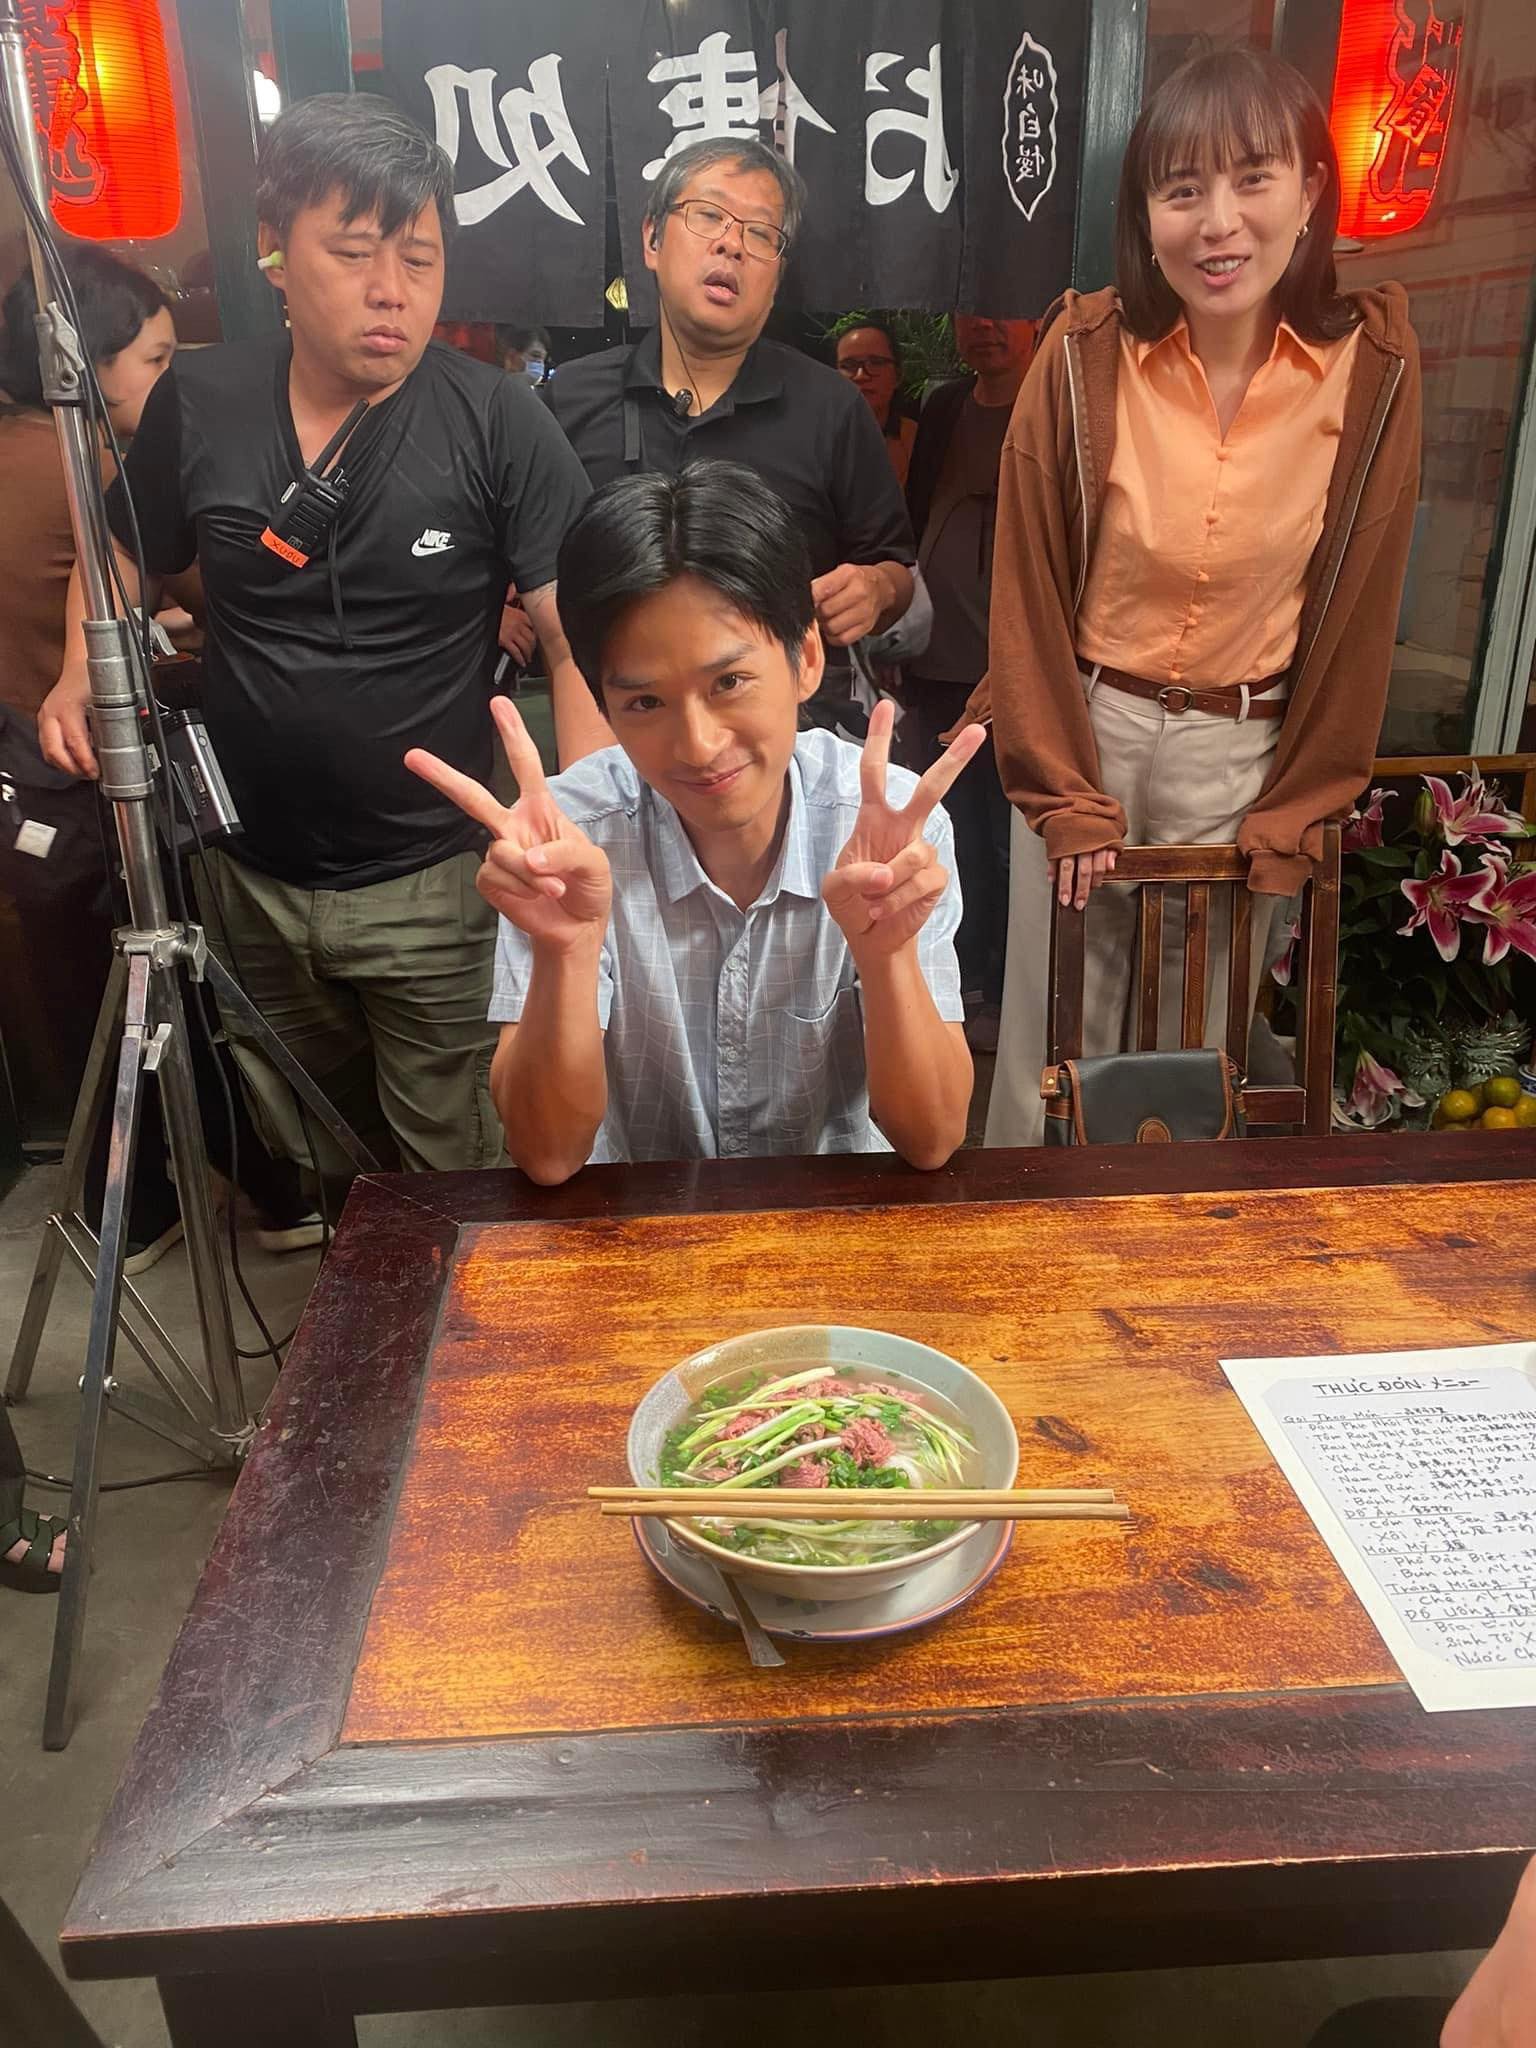 Trần Nghĩa đóng phim với diễn viên Nhật, hết giờ làm đưa bạn diễn đi ăn món Hà Nội - Ảnh 7.